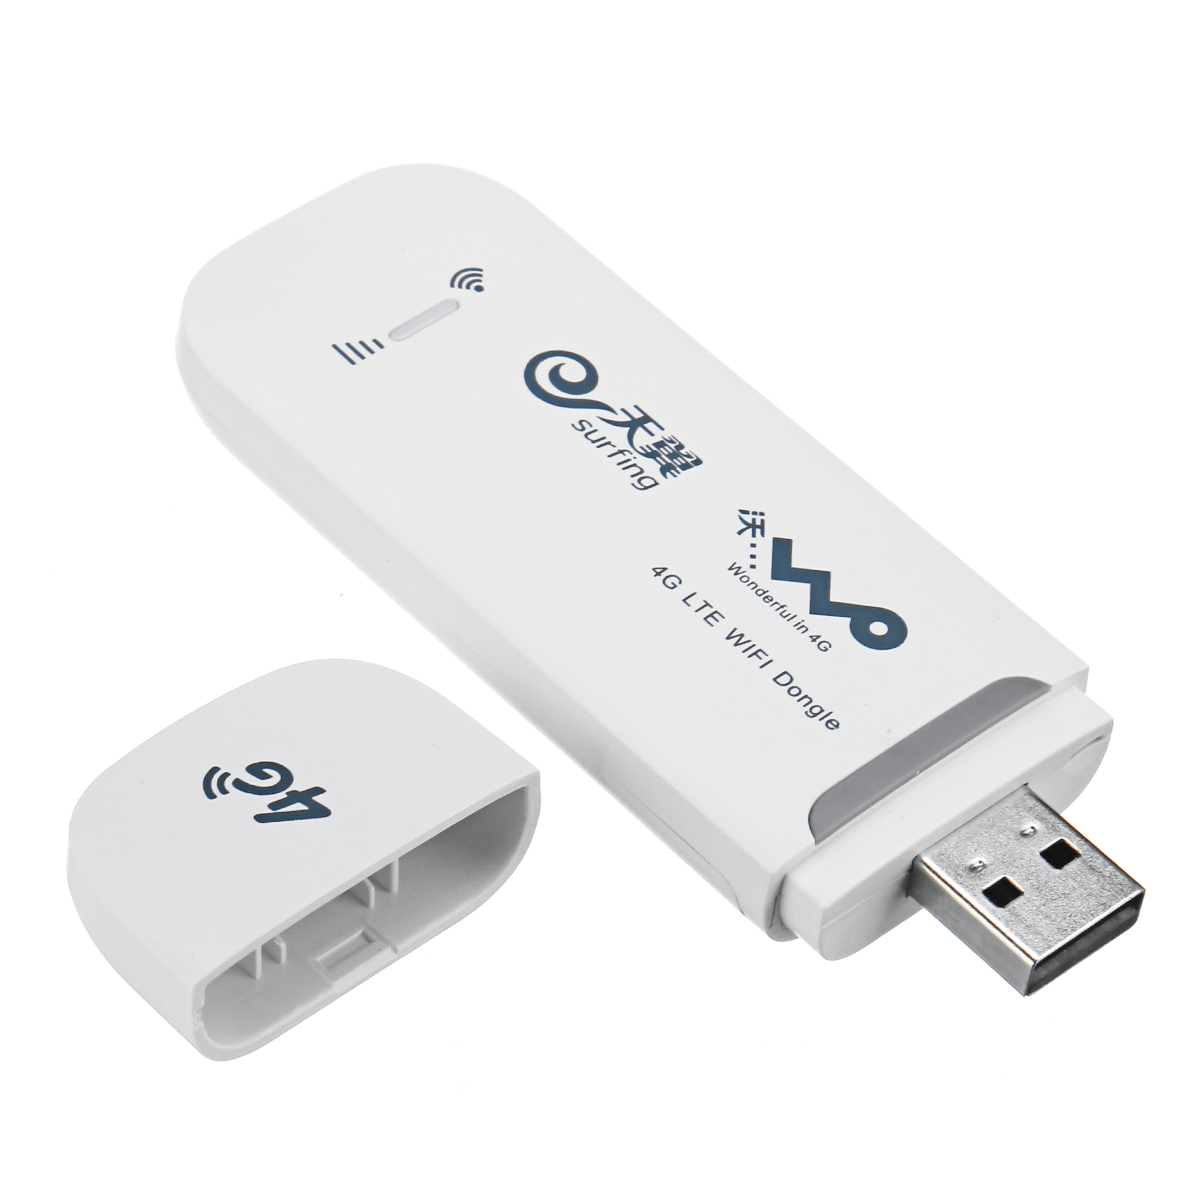 

4G 3G LTE Портативный мобильный USB WI-FI Hotpot Беспроводной маршрутизатор Dongle с гнездом для TF-карты для планшета мобильного телефона